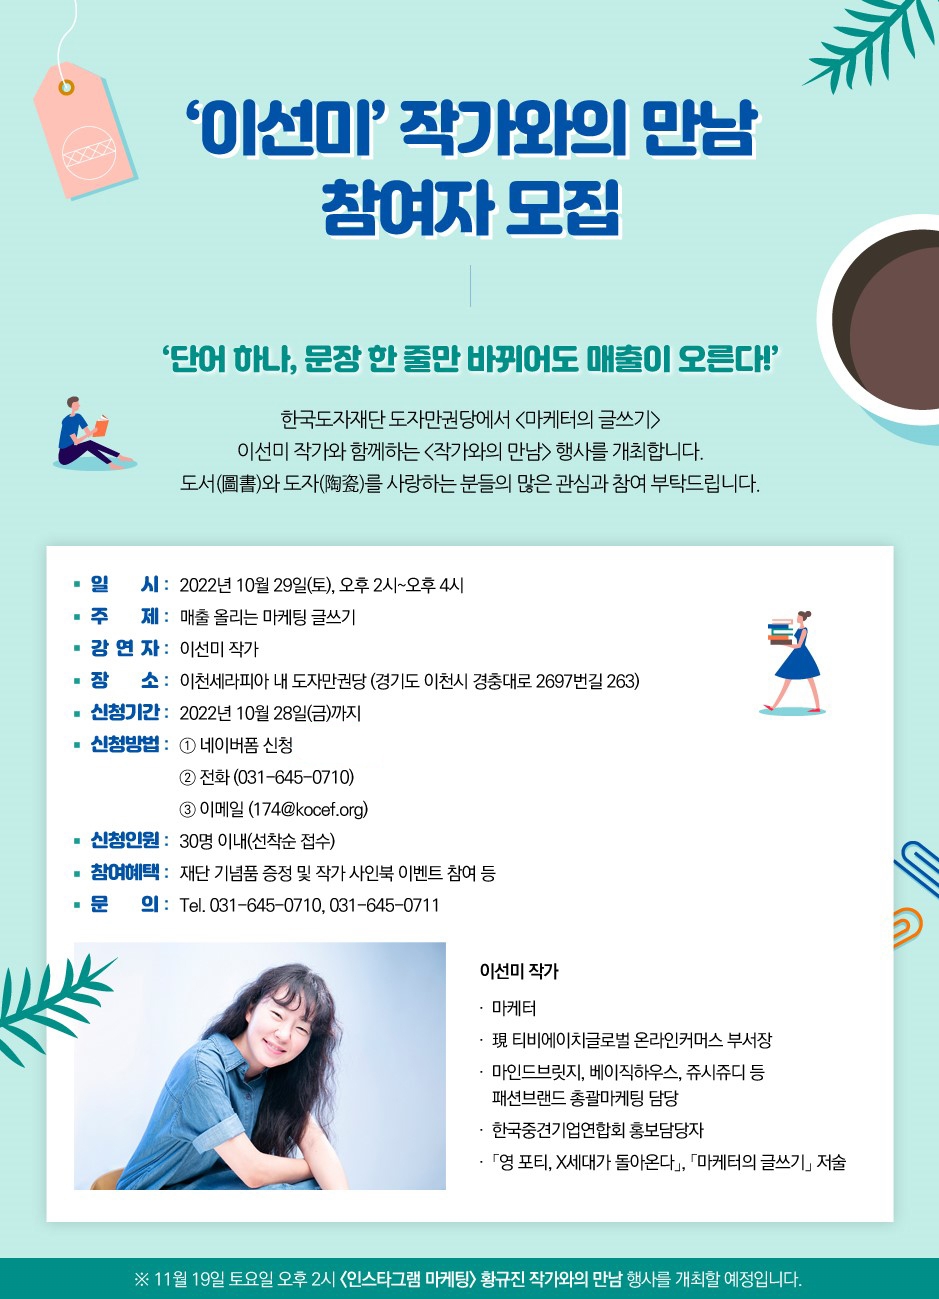 경기도,한국도자재단 29일 도자 전문 도서관 ‘도자만권당’ 특별 문화 행